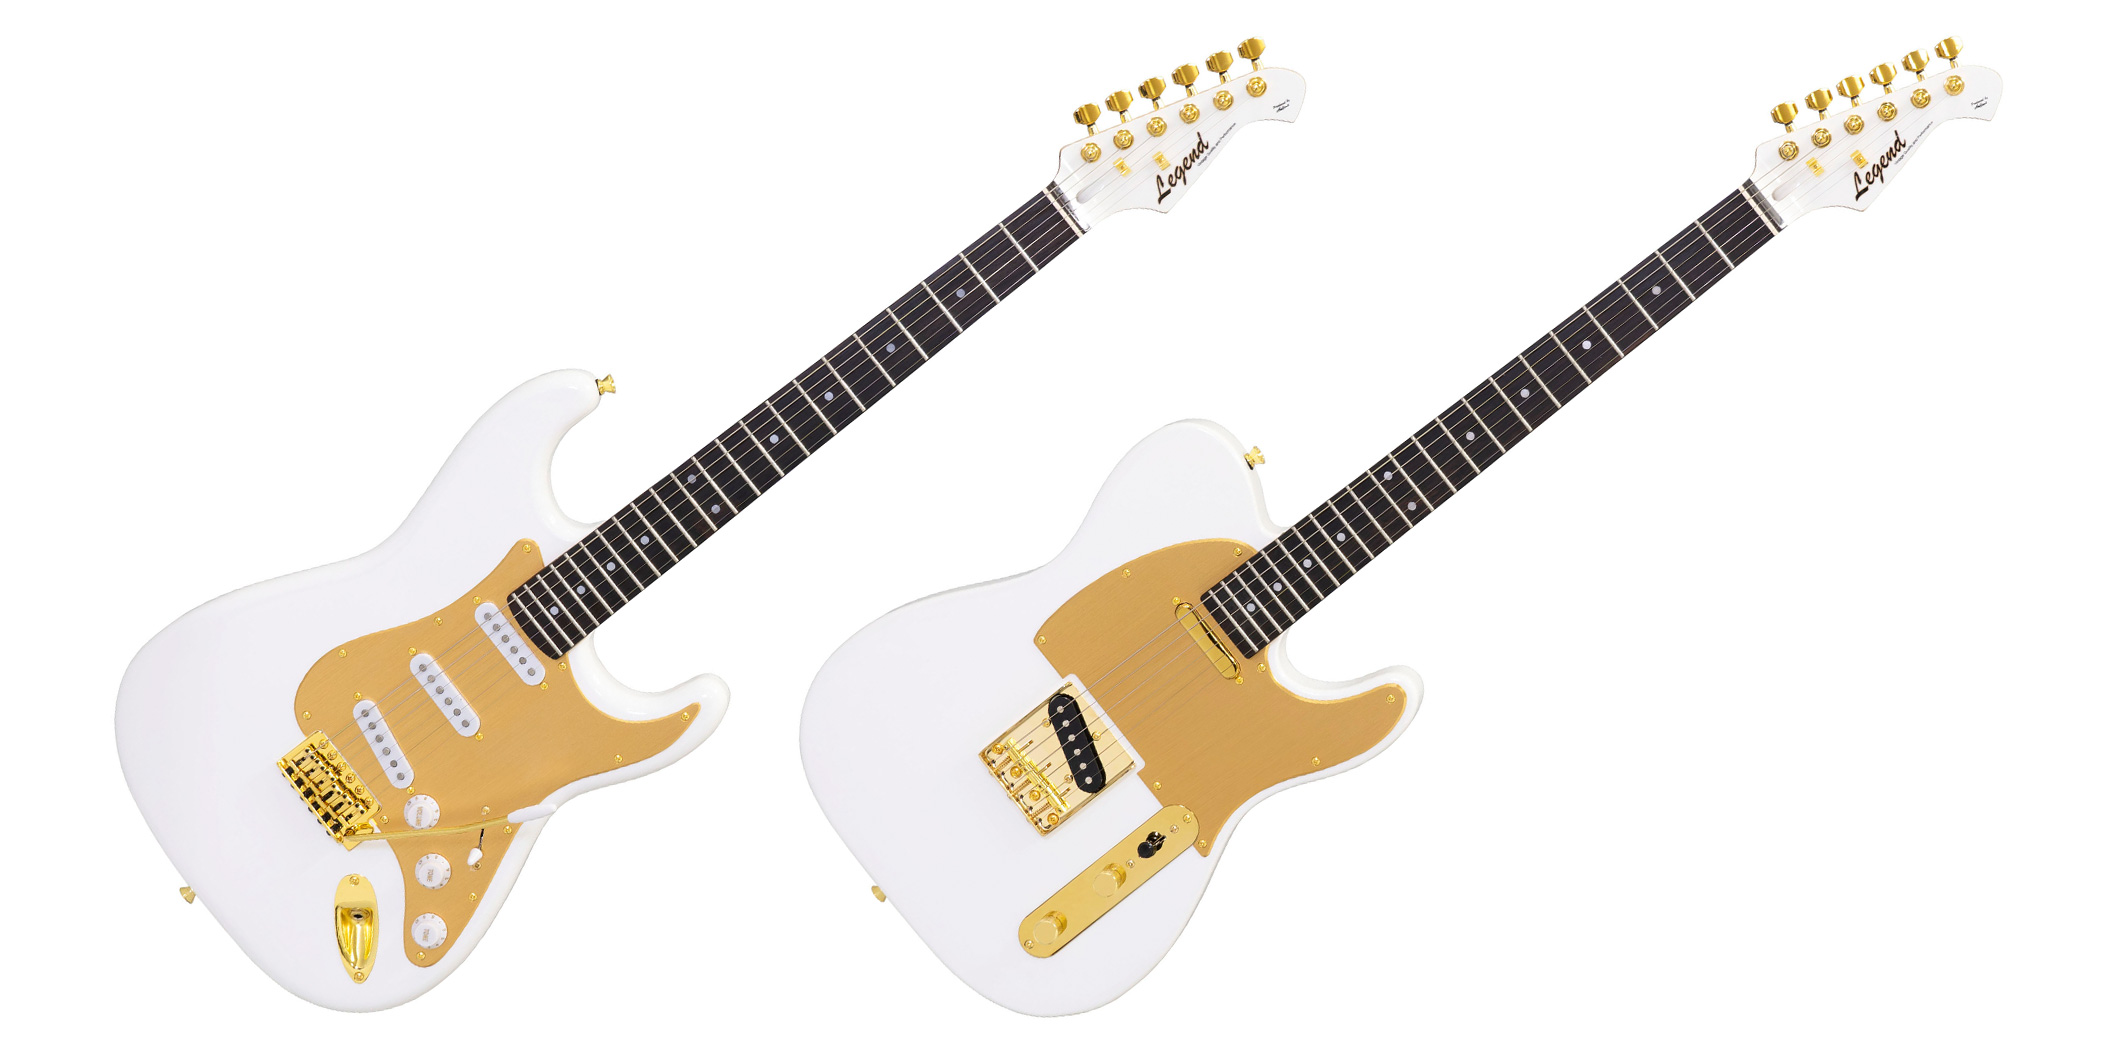 Aria Pro IIより、アノダイズド・ピックガードとゴールド・パーツを採用した数量限定のエレクトリック・ギターが2機種登場